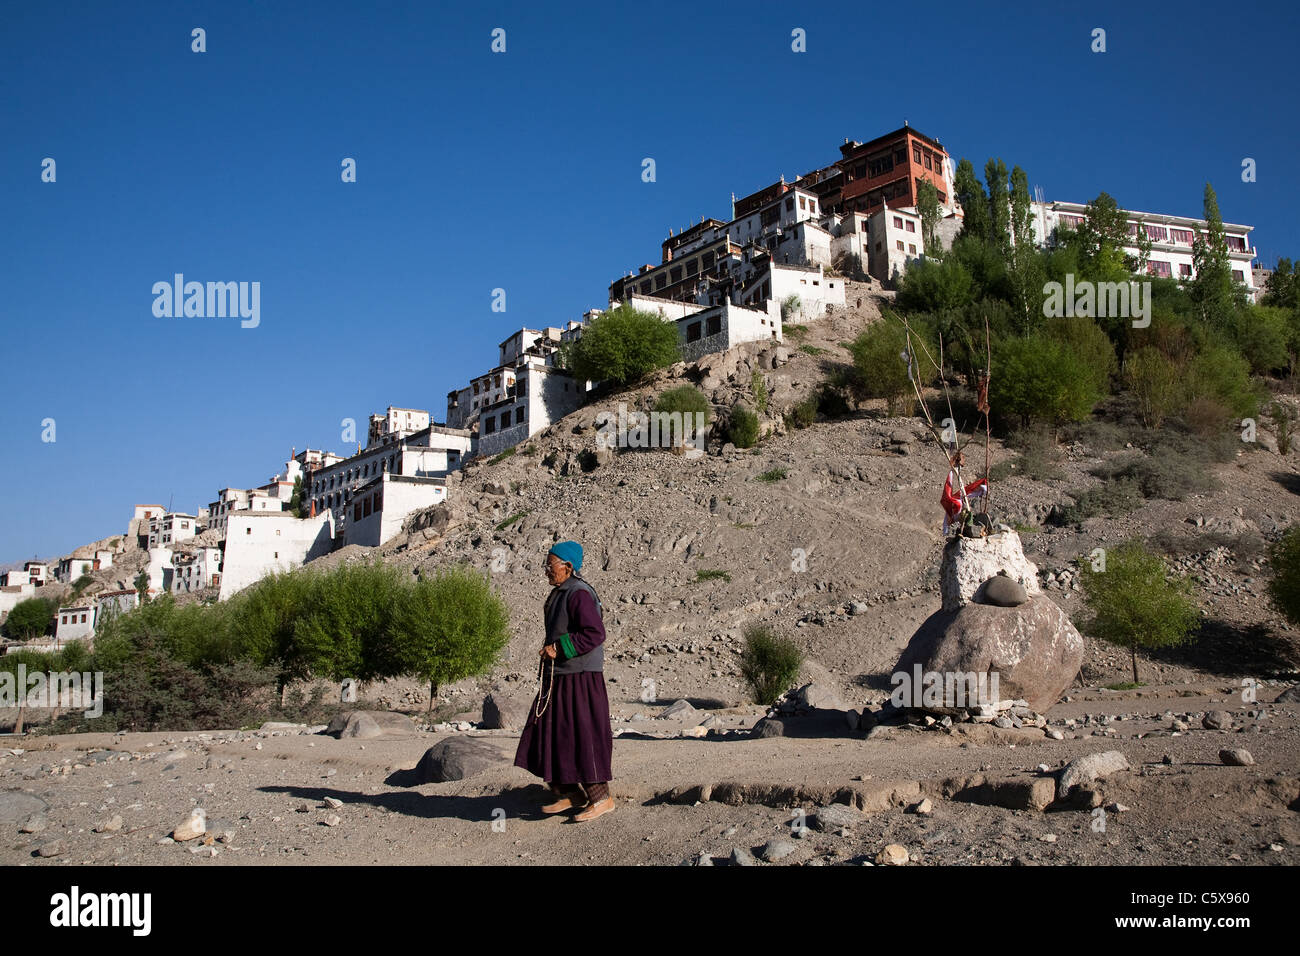 Femme ladakhis Thiksey Gompa monastère / Passage au Ladakh région du Jammu-et-Cachemire. L'Inde Banque D'Images